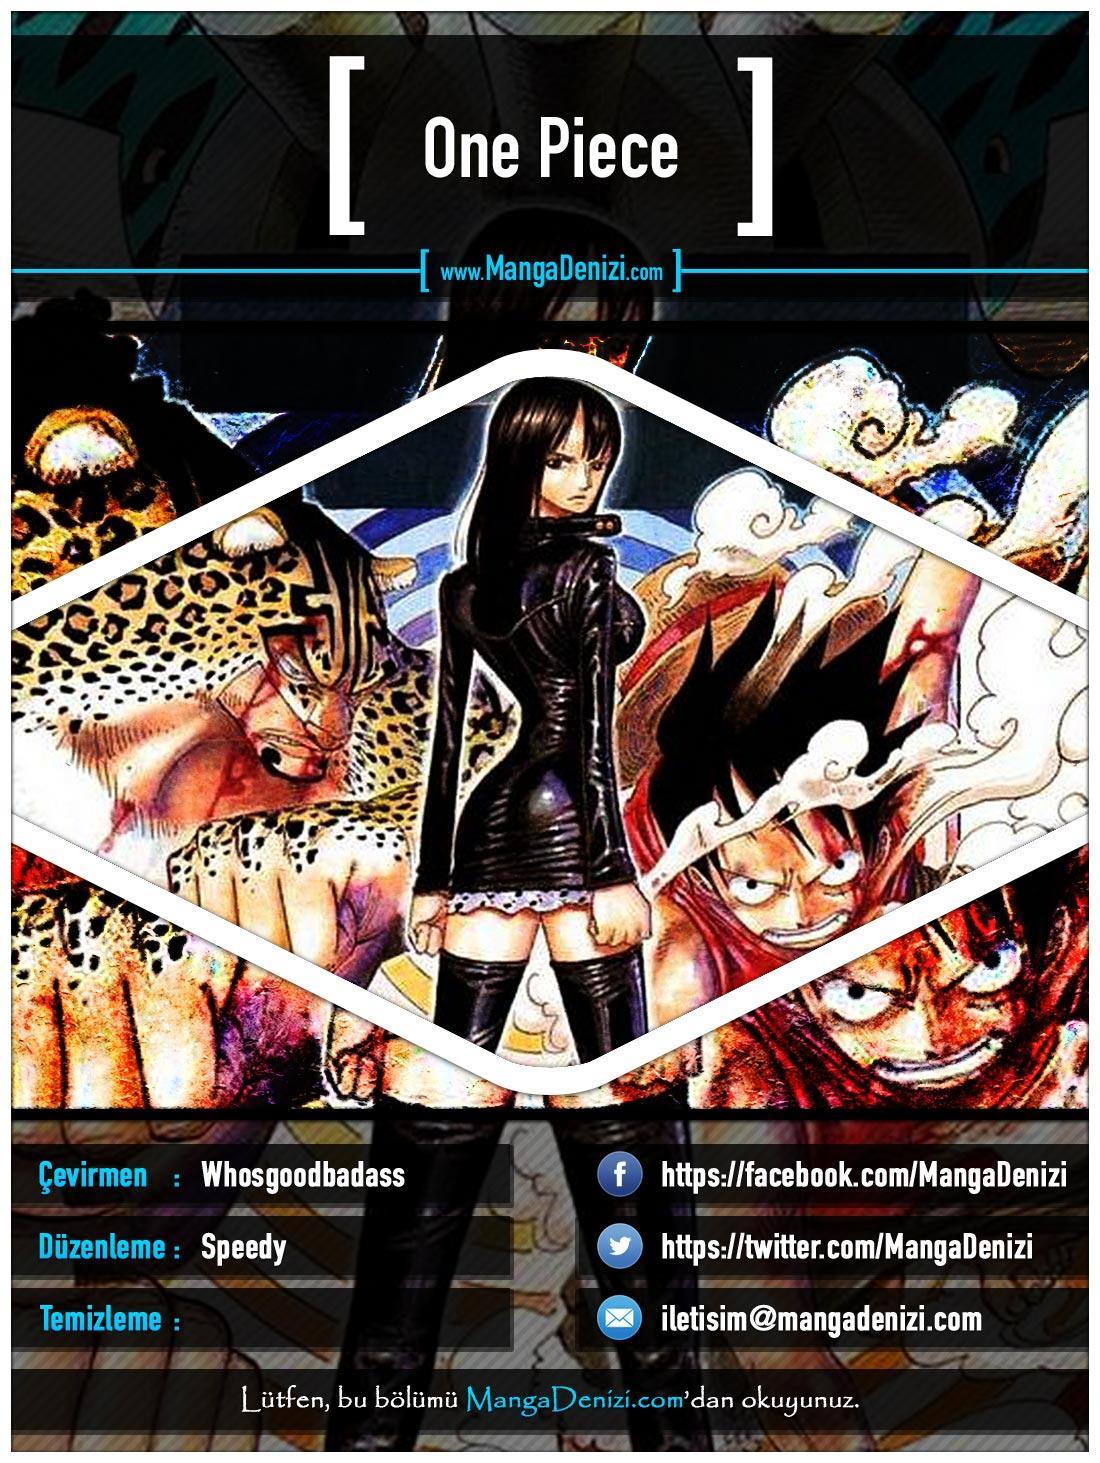 One Piece [Renkli] mangasının 0435 bölümünün 1. sayfasını okuyorsunuz.